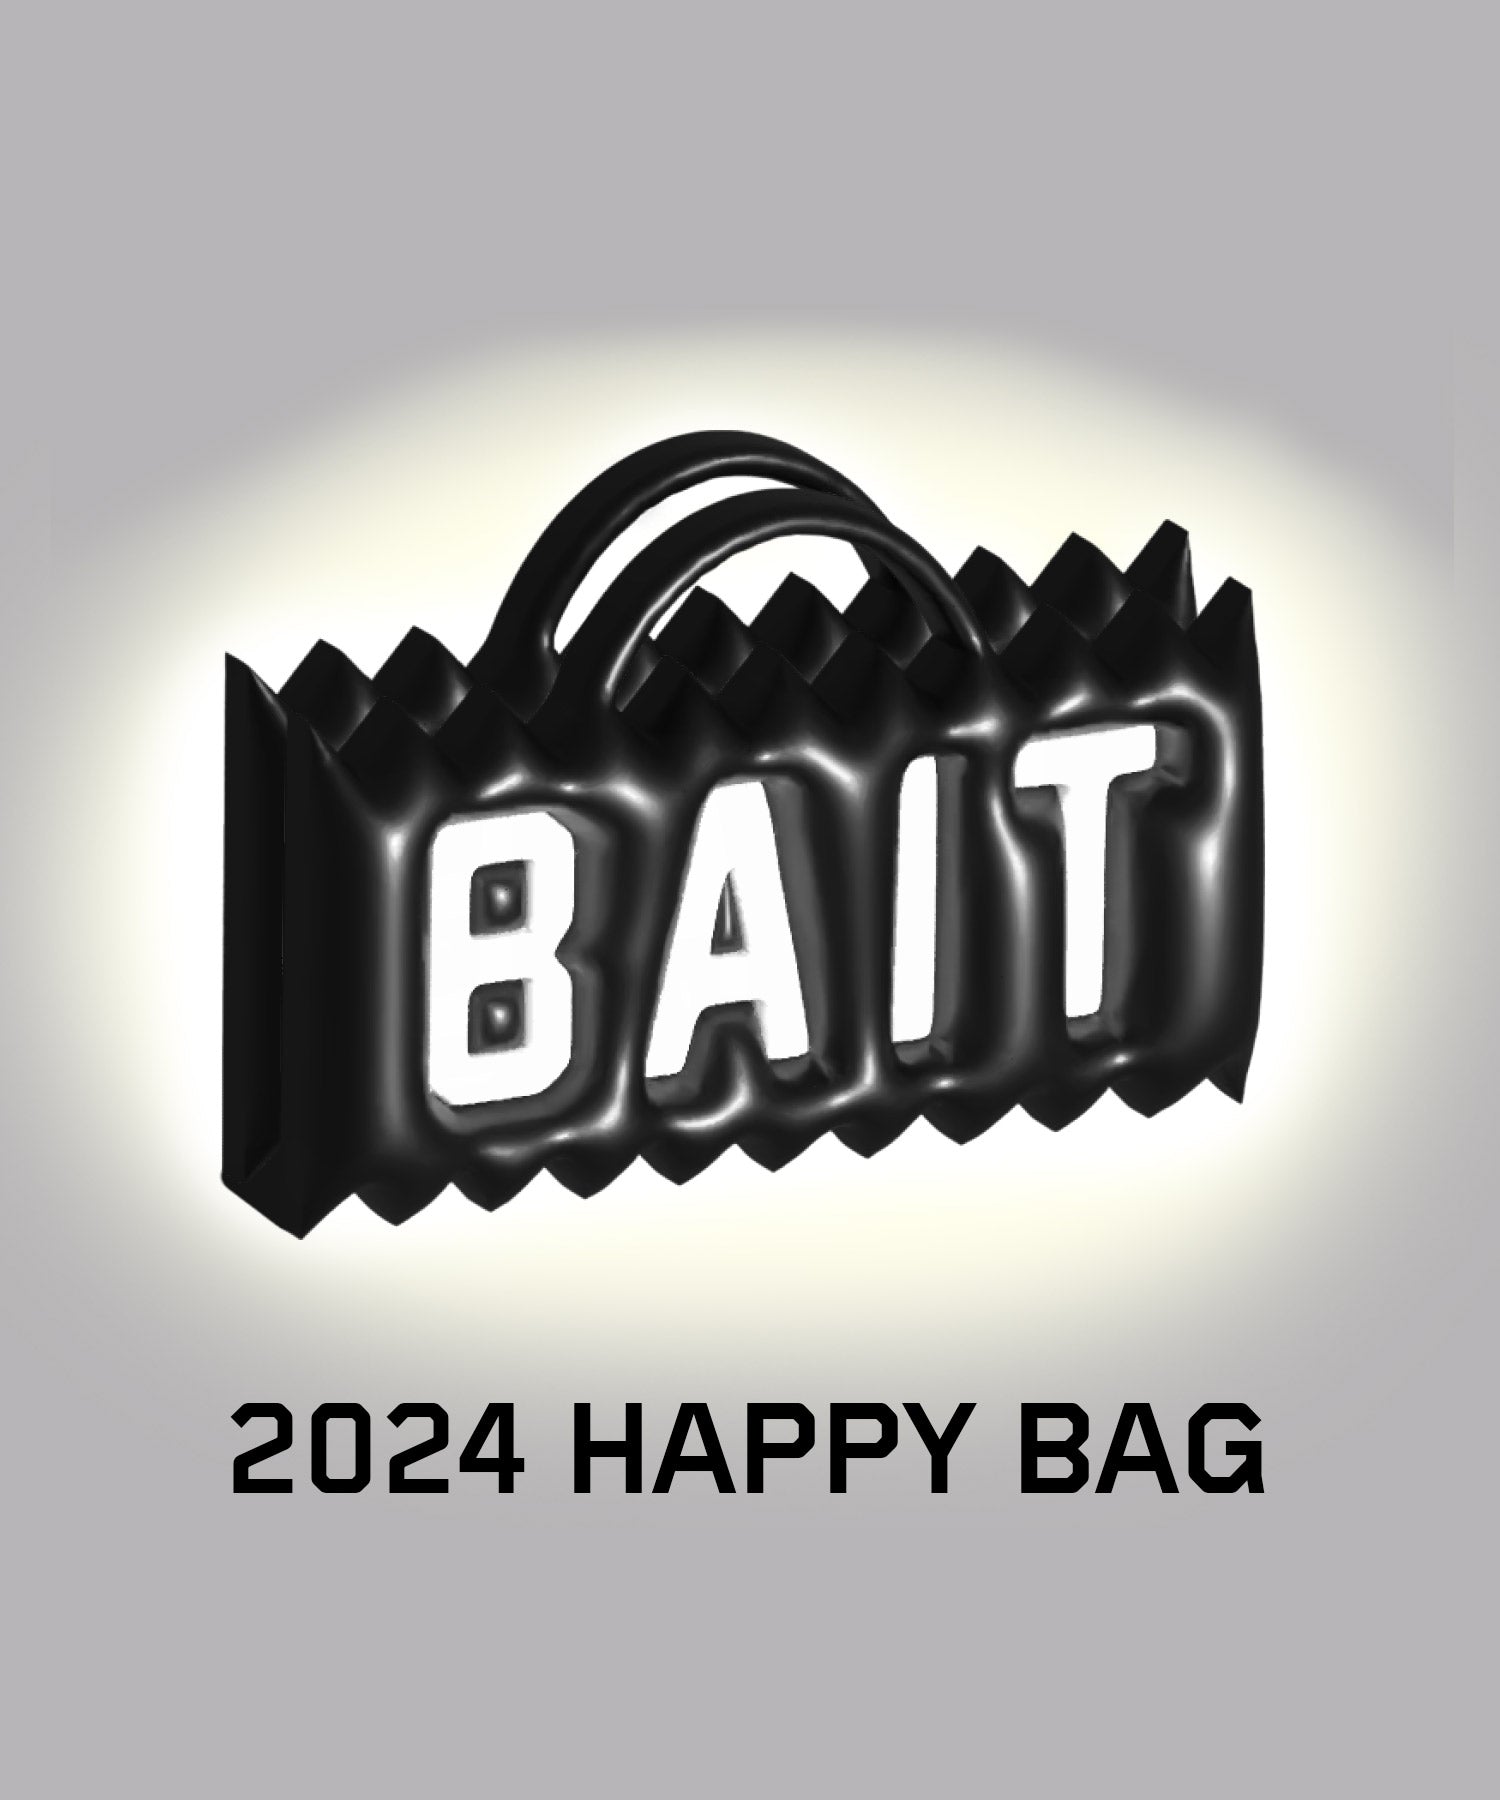 Bait Happy Box 2024 - 244-BAT-BOX-001